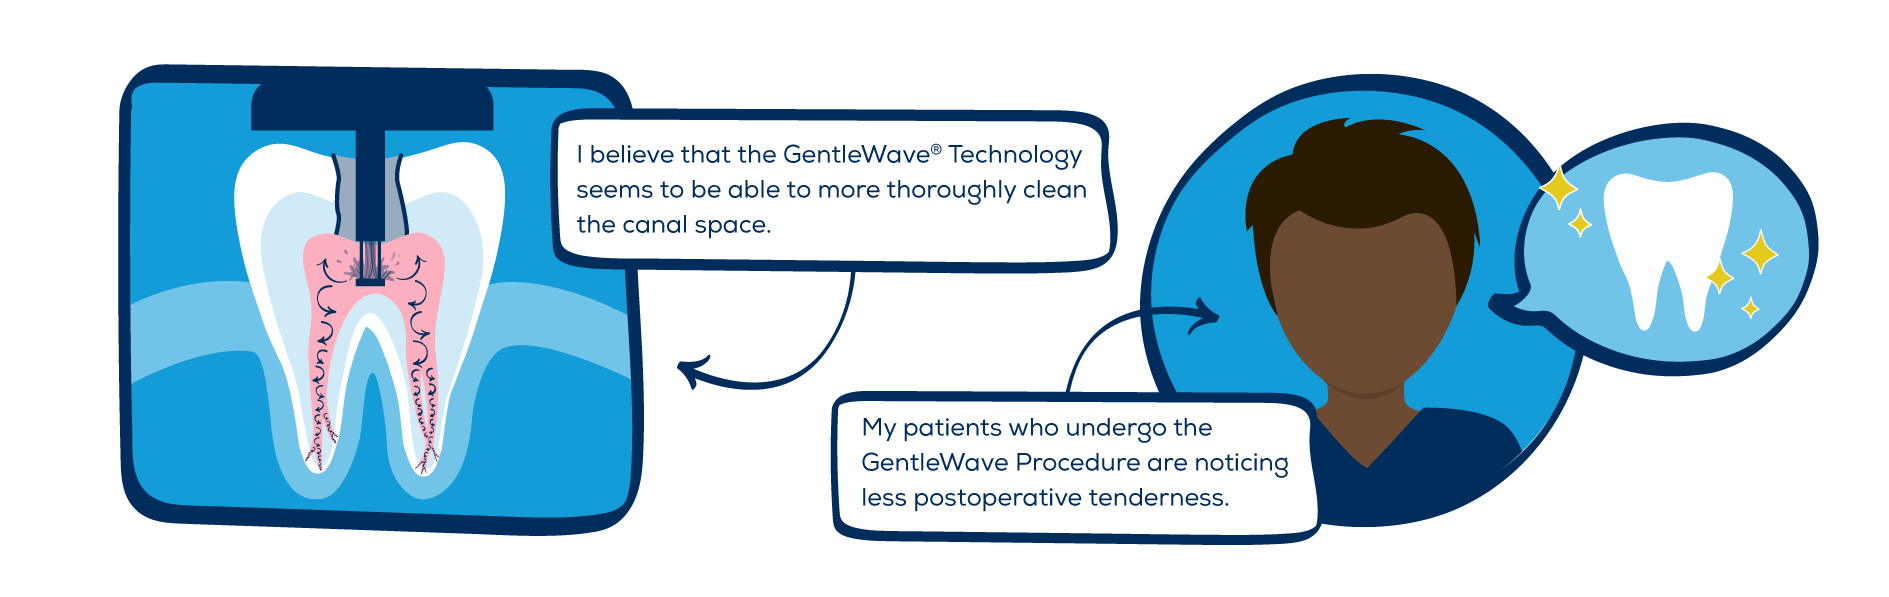 Advantages of the GentleWave Procedure